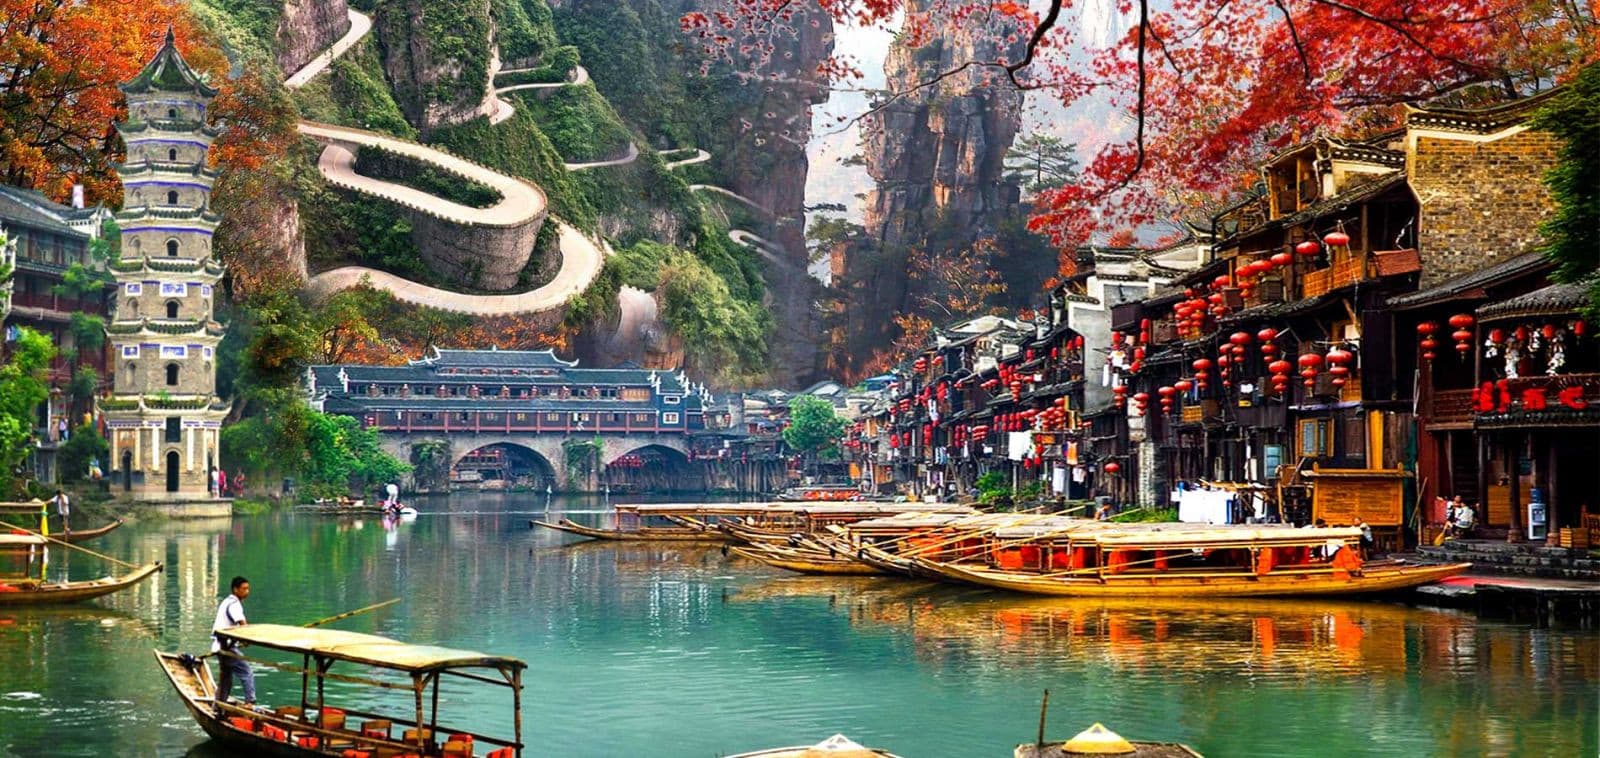 Tour Trung Quốc: Trường Sa - Phượng Hoàng Cổ Trấn - Trương Gia Giới 6 ngày 5 đêm từ Hà Nội